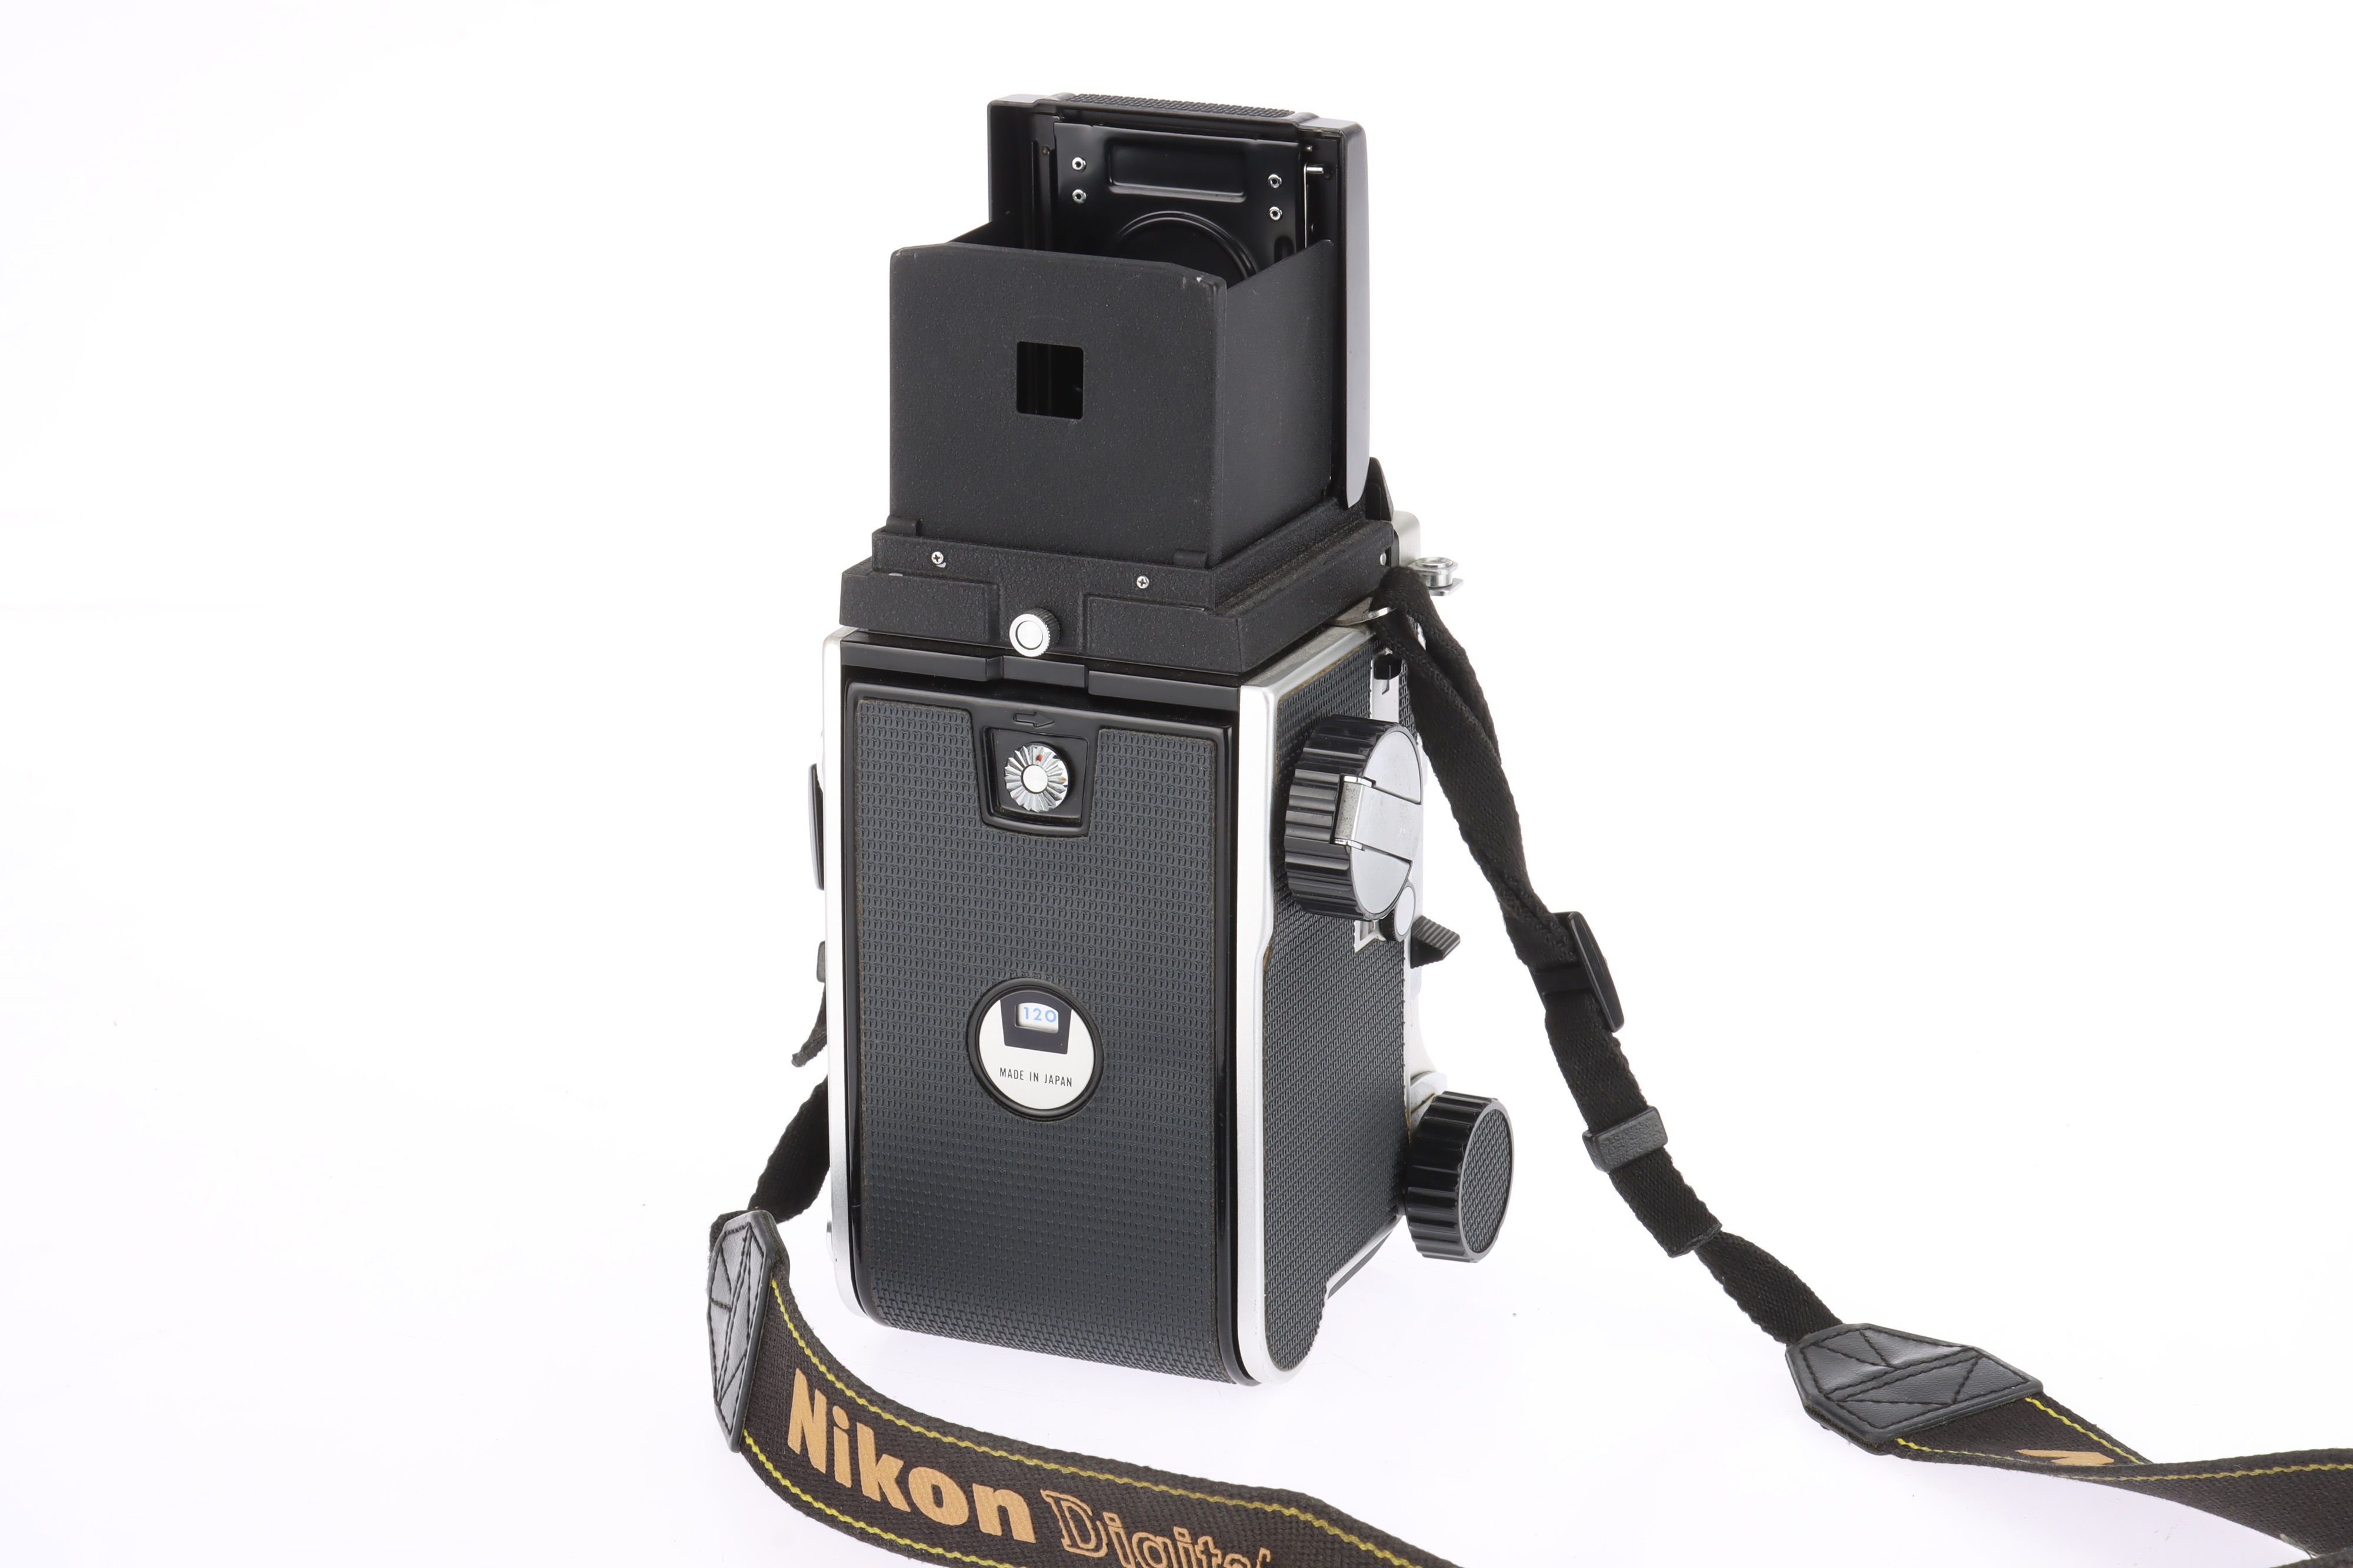 A Mamiya C220 Professional Medium Format TLR Camera - Image 2 of 2